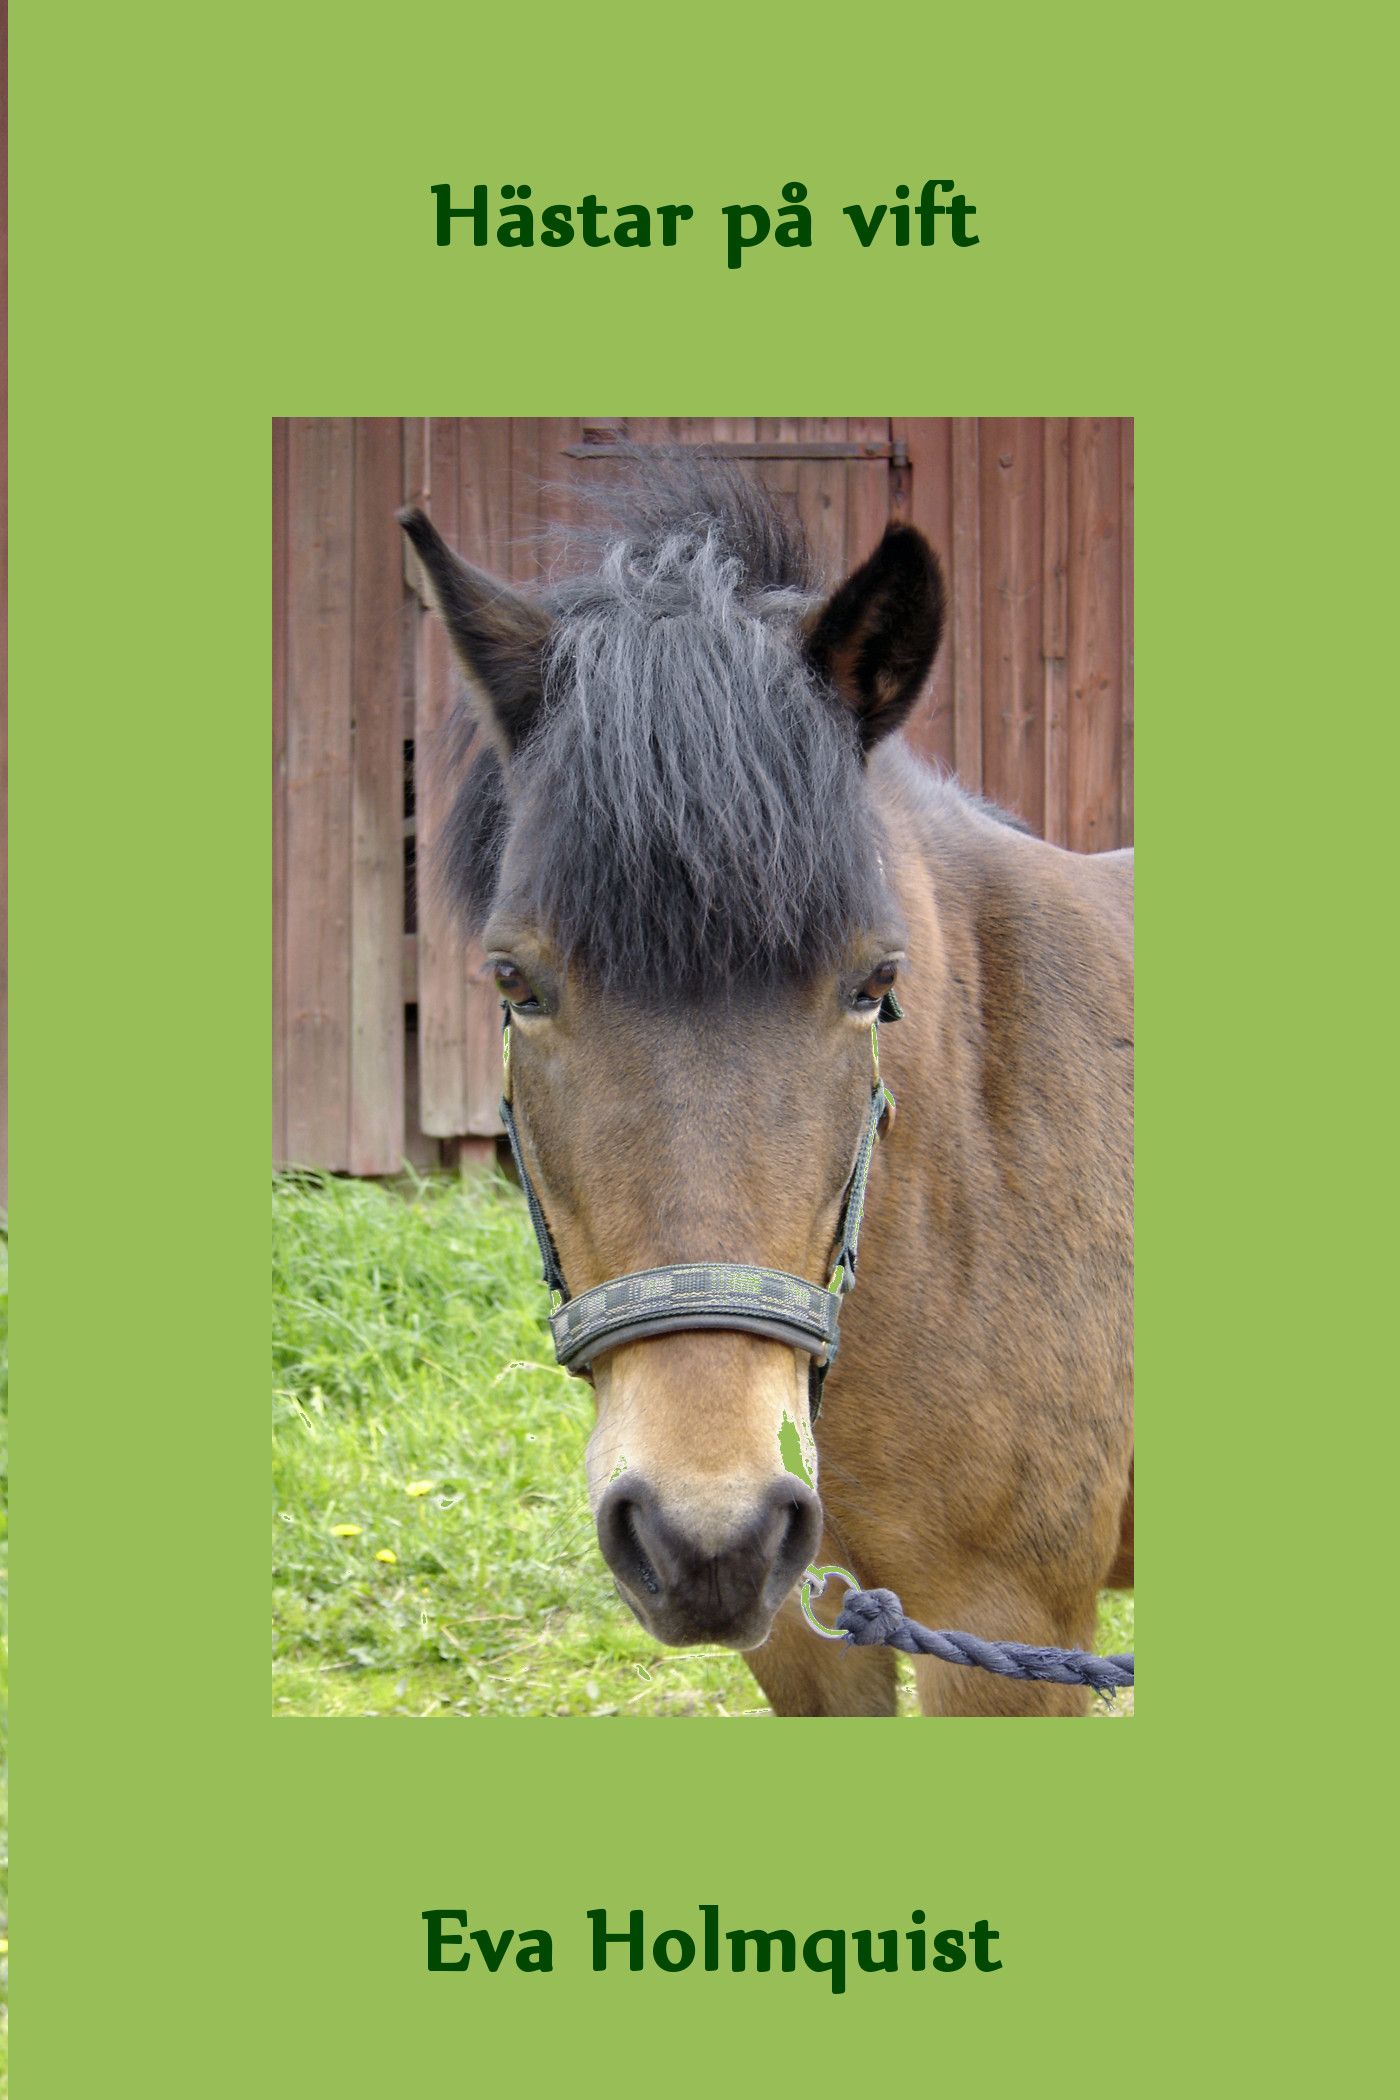 Hästar på vift, e-bok av Eva Holmquist